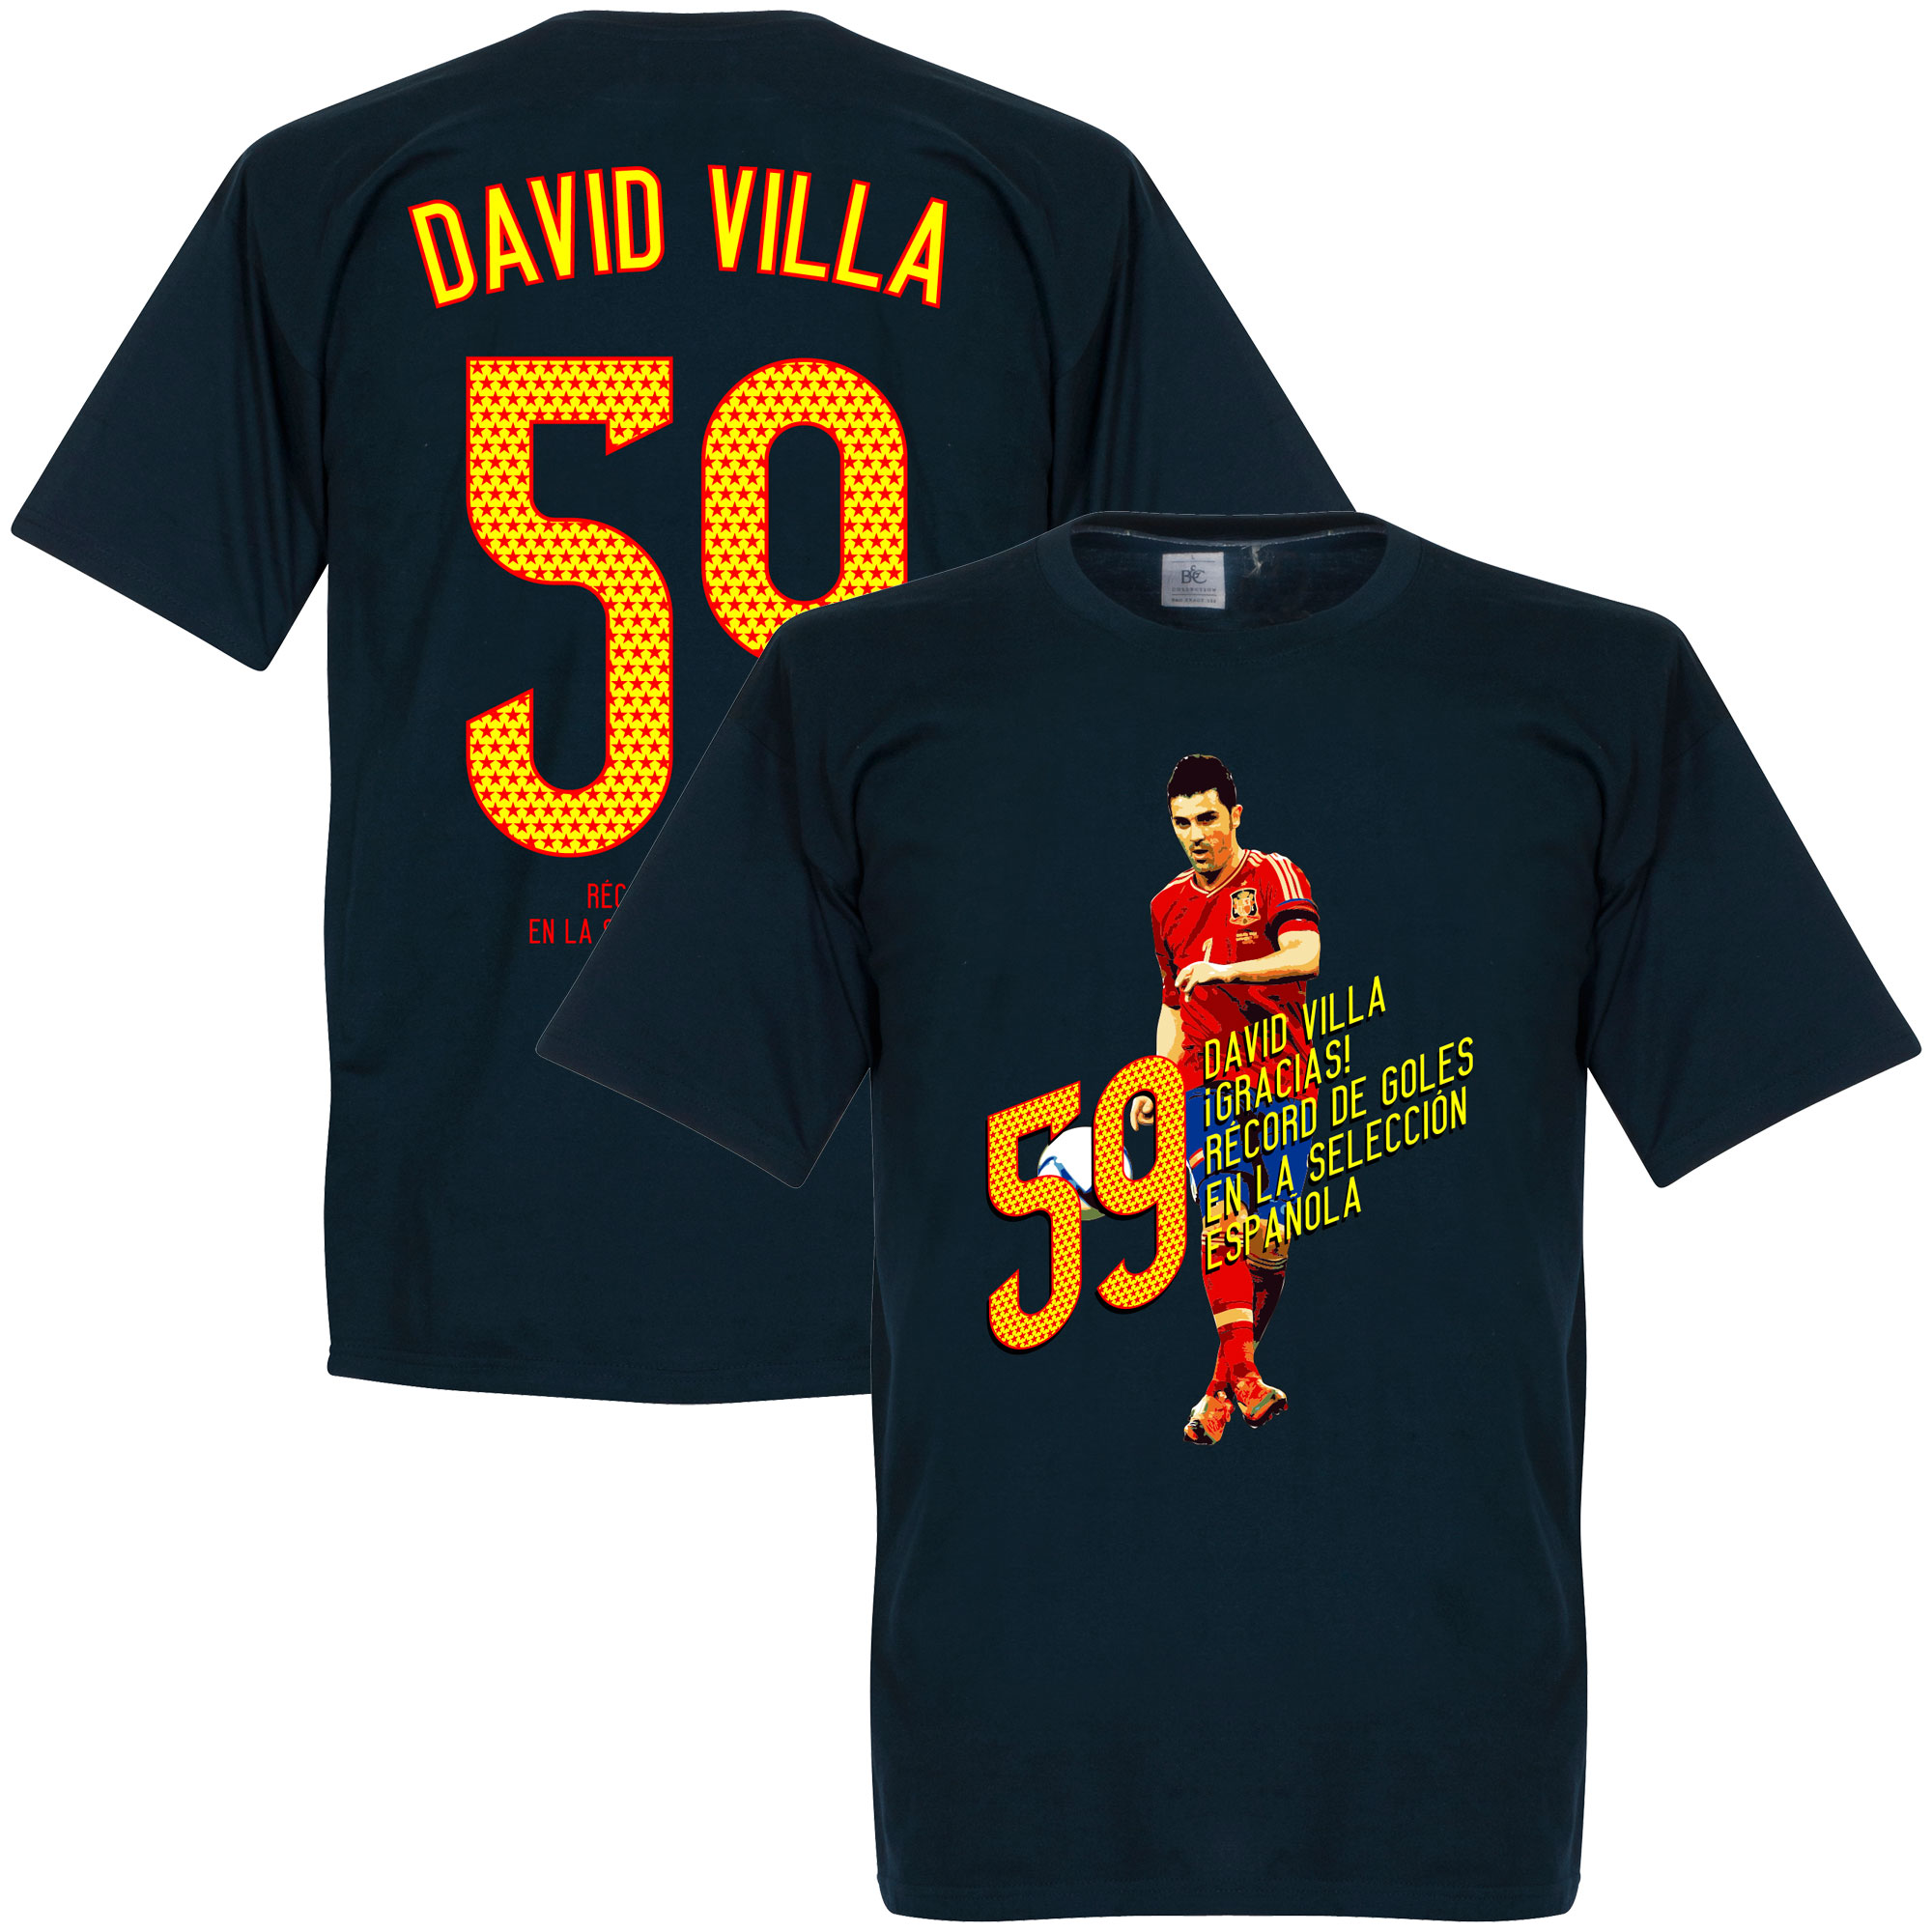 David Villa 59 Goals T-Shirt XXL